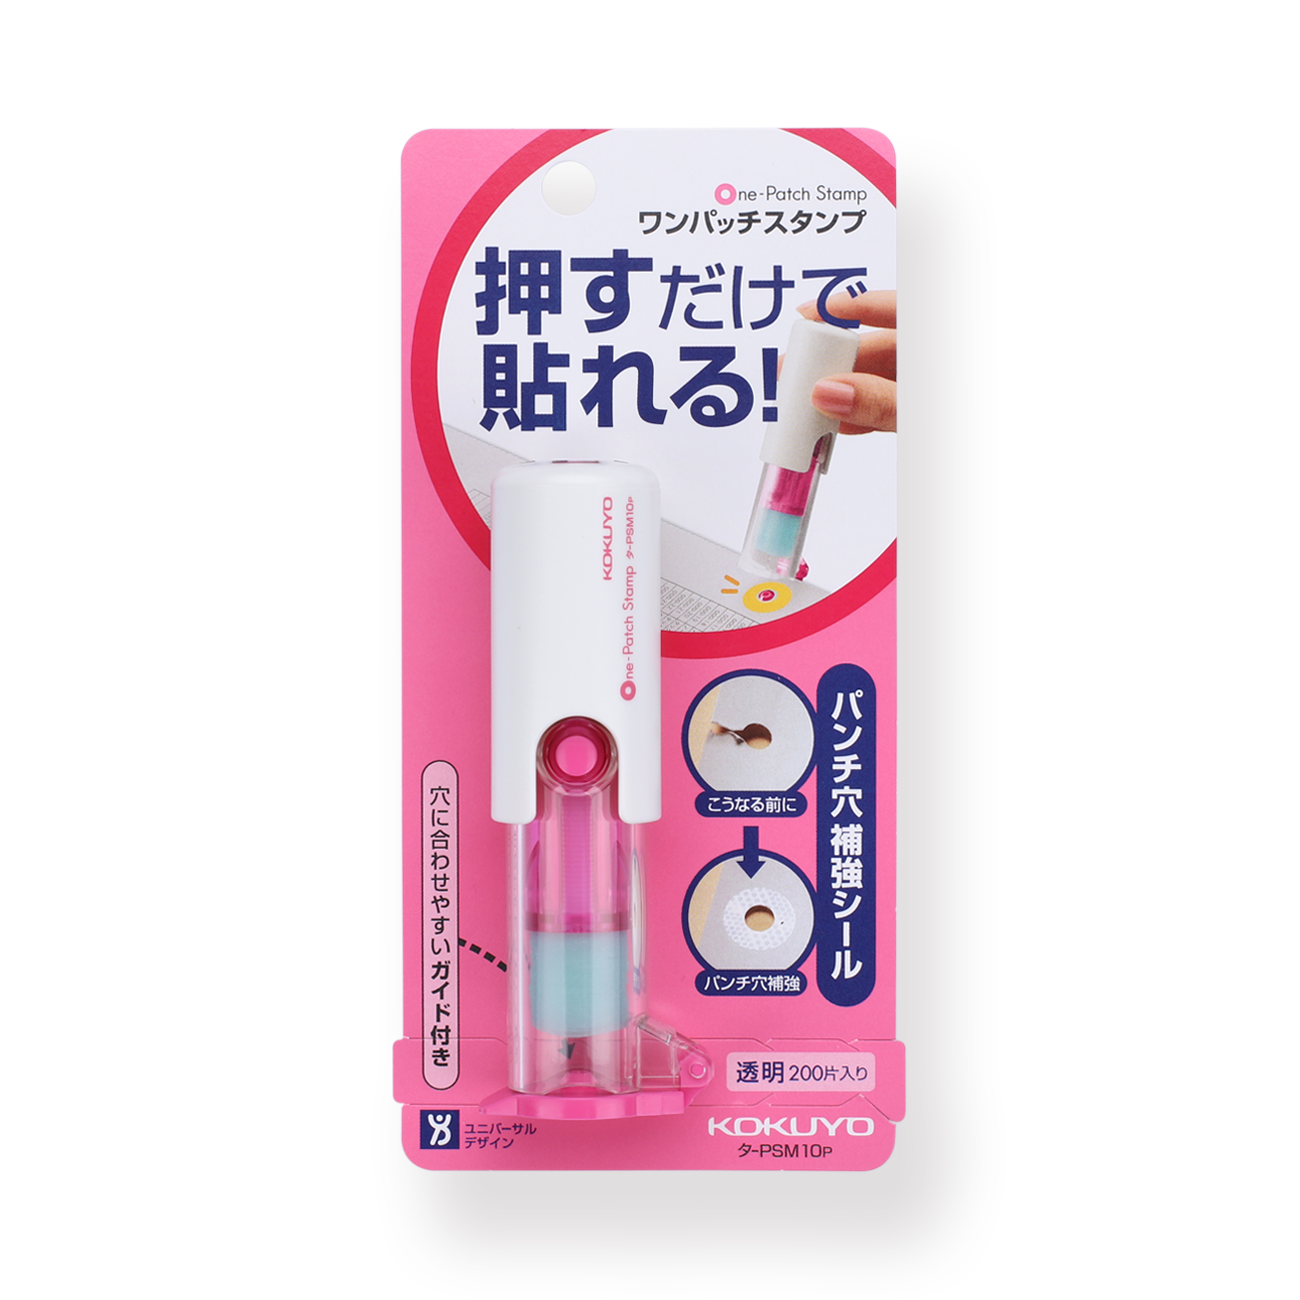 Kokuyo One-Patch Stamp - Pink - Stationery Pal